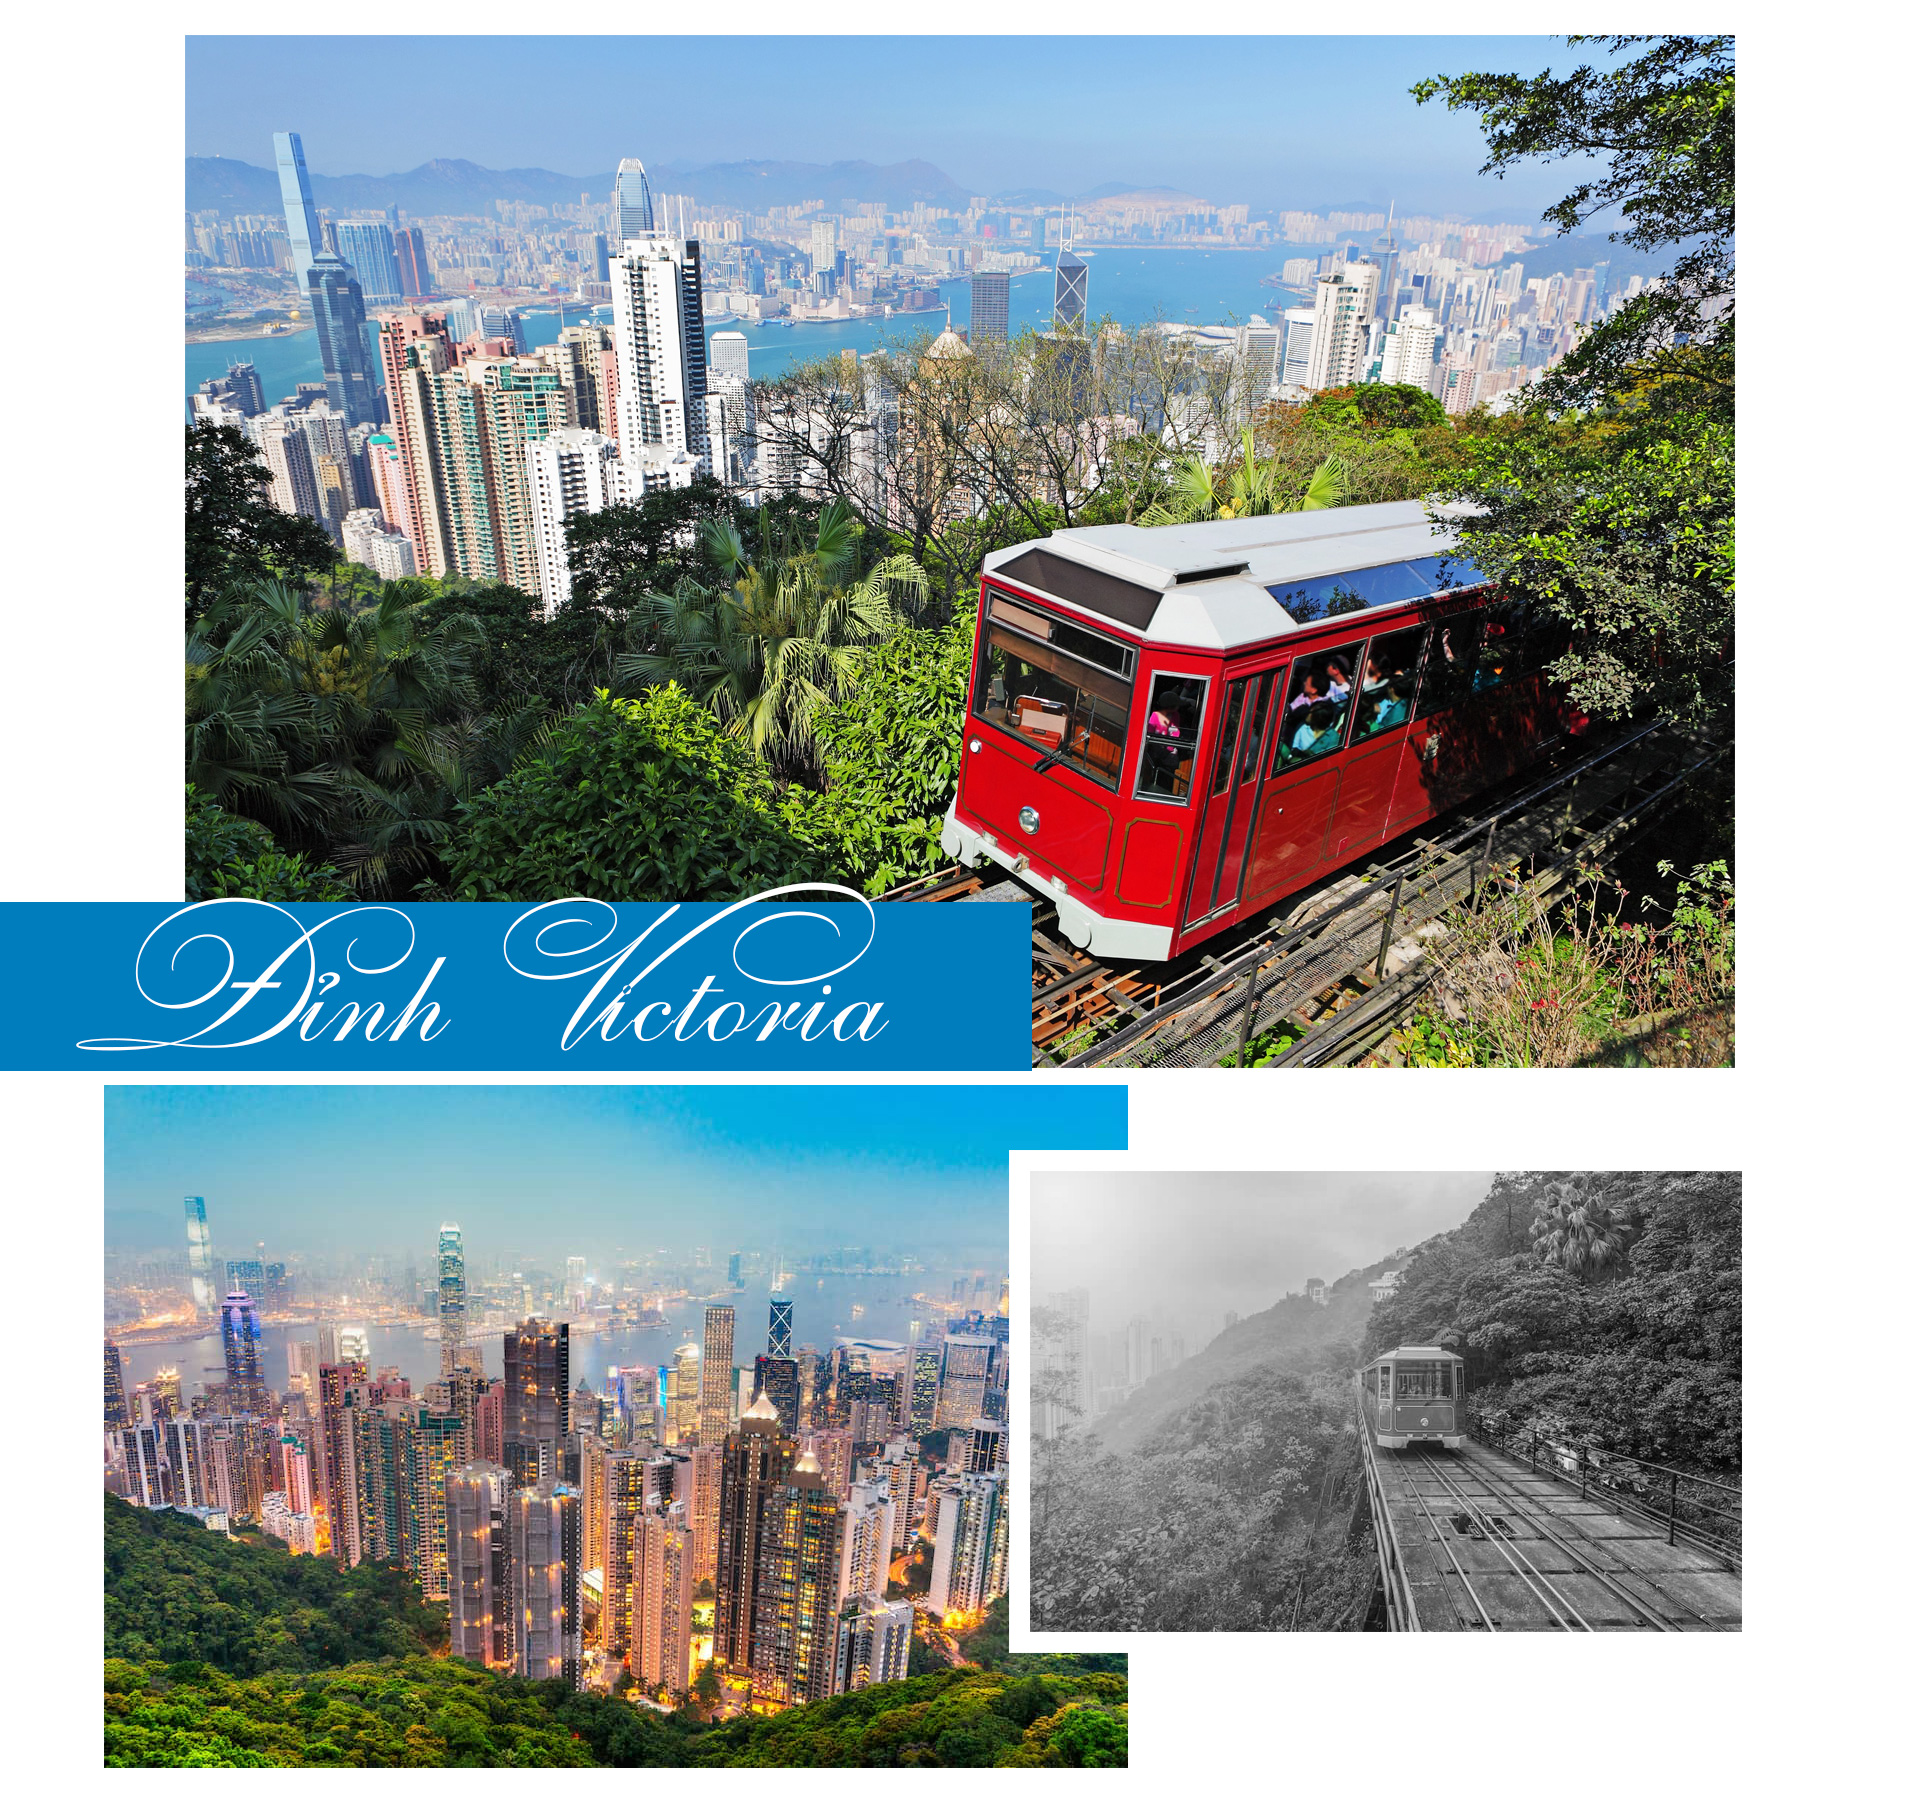 Khám phá Hồng Kông với những điểm đến ấn tượng nhất - 2